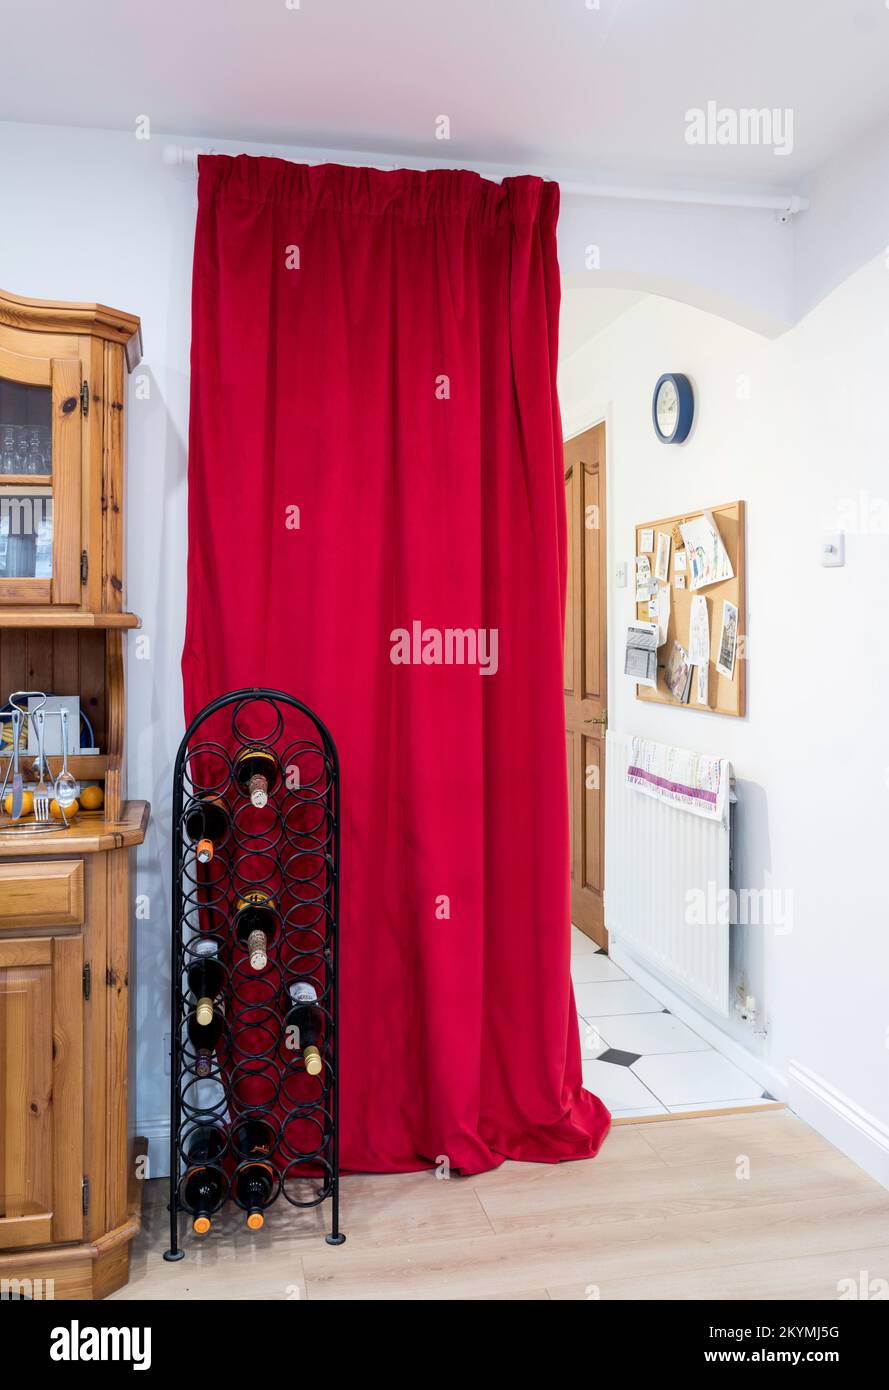 Concepto de ahorro de energía, una cortina forrada pesada entre las habitaciones de una casa Foto de stock